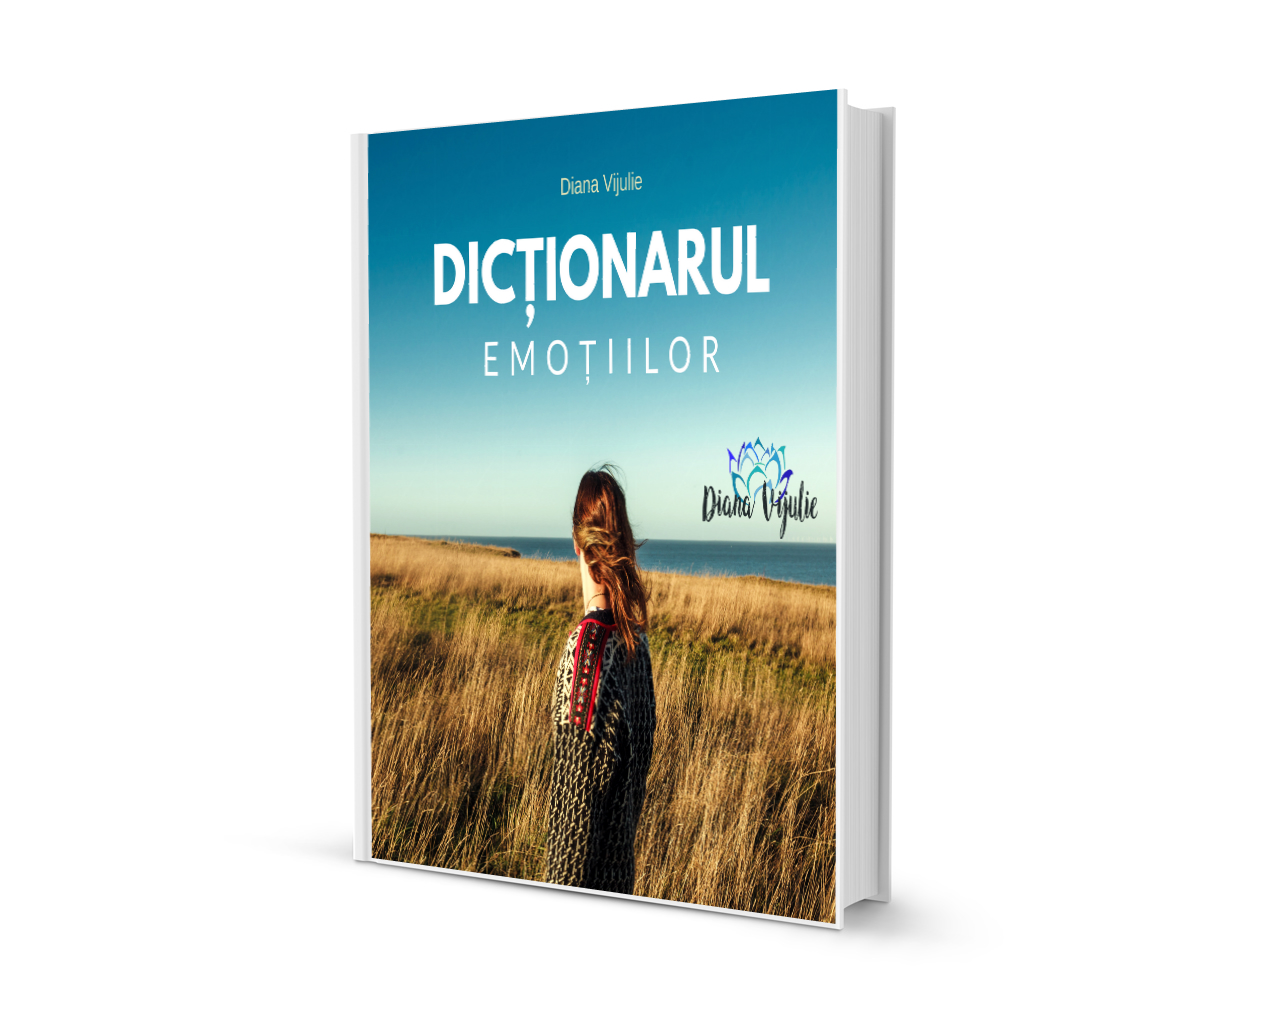 dictionarul emotiilor cover